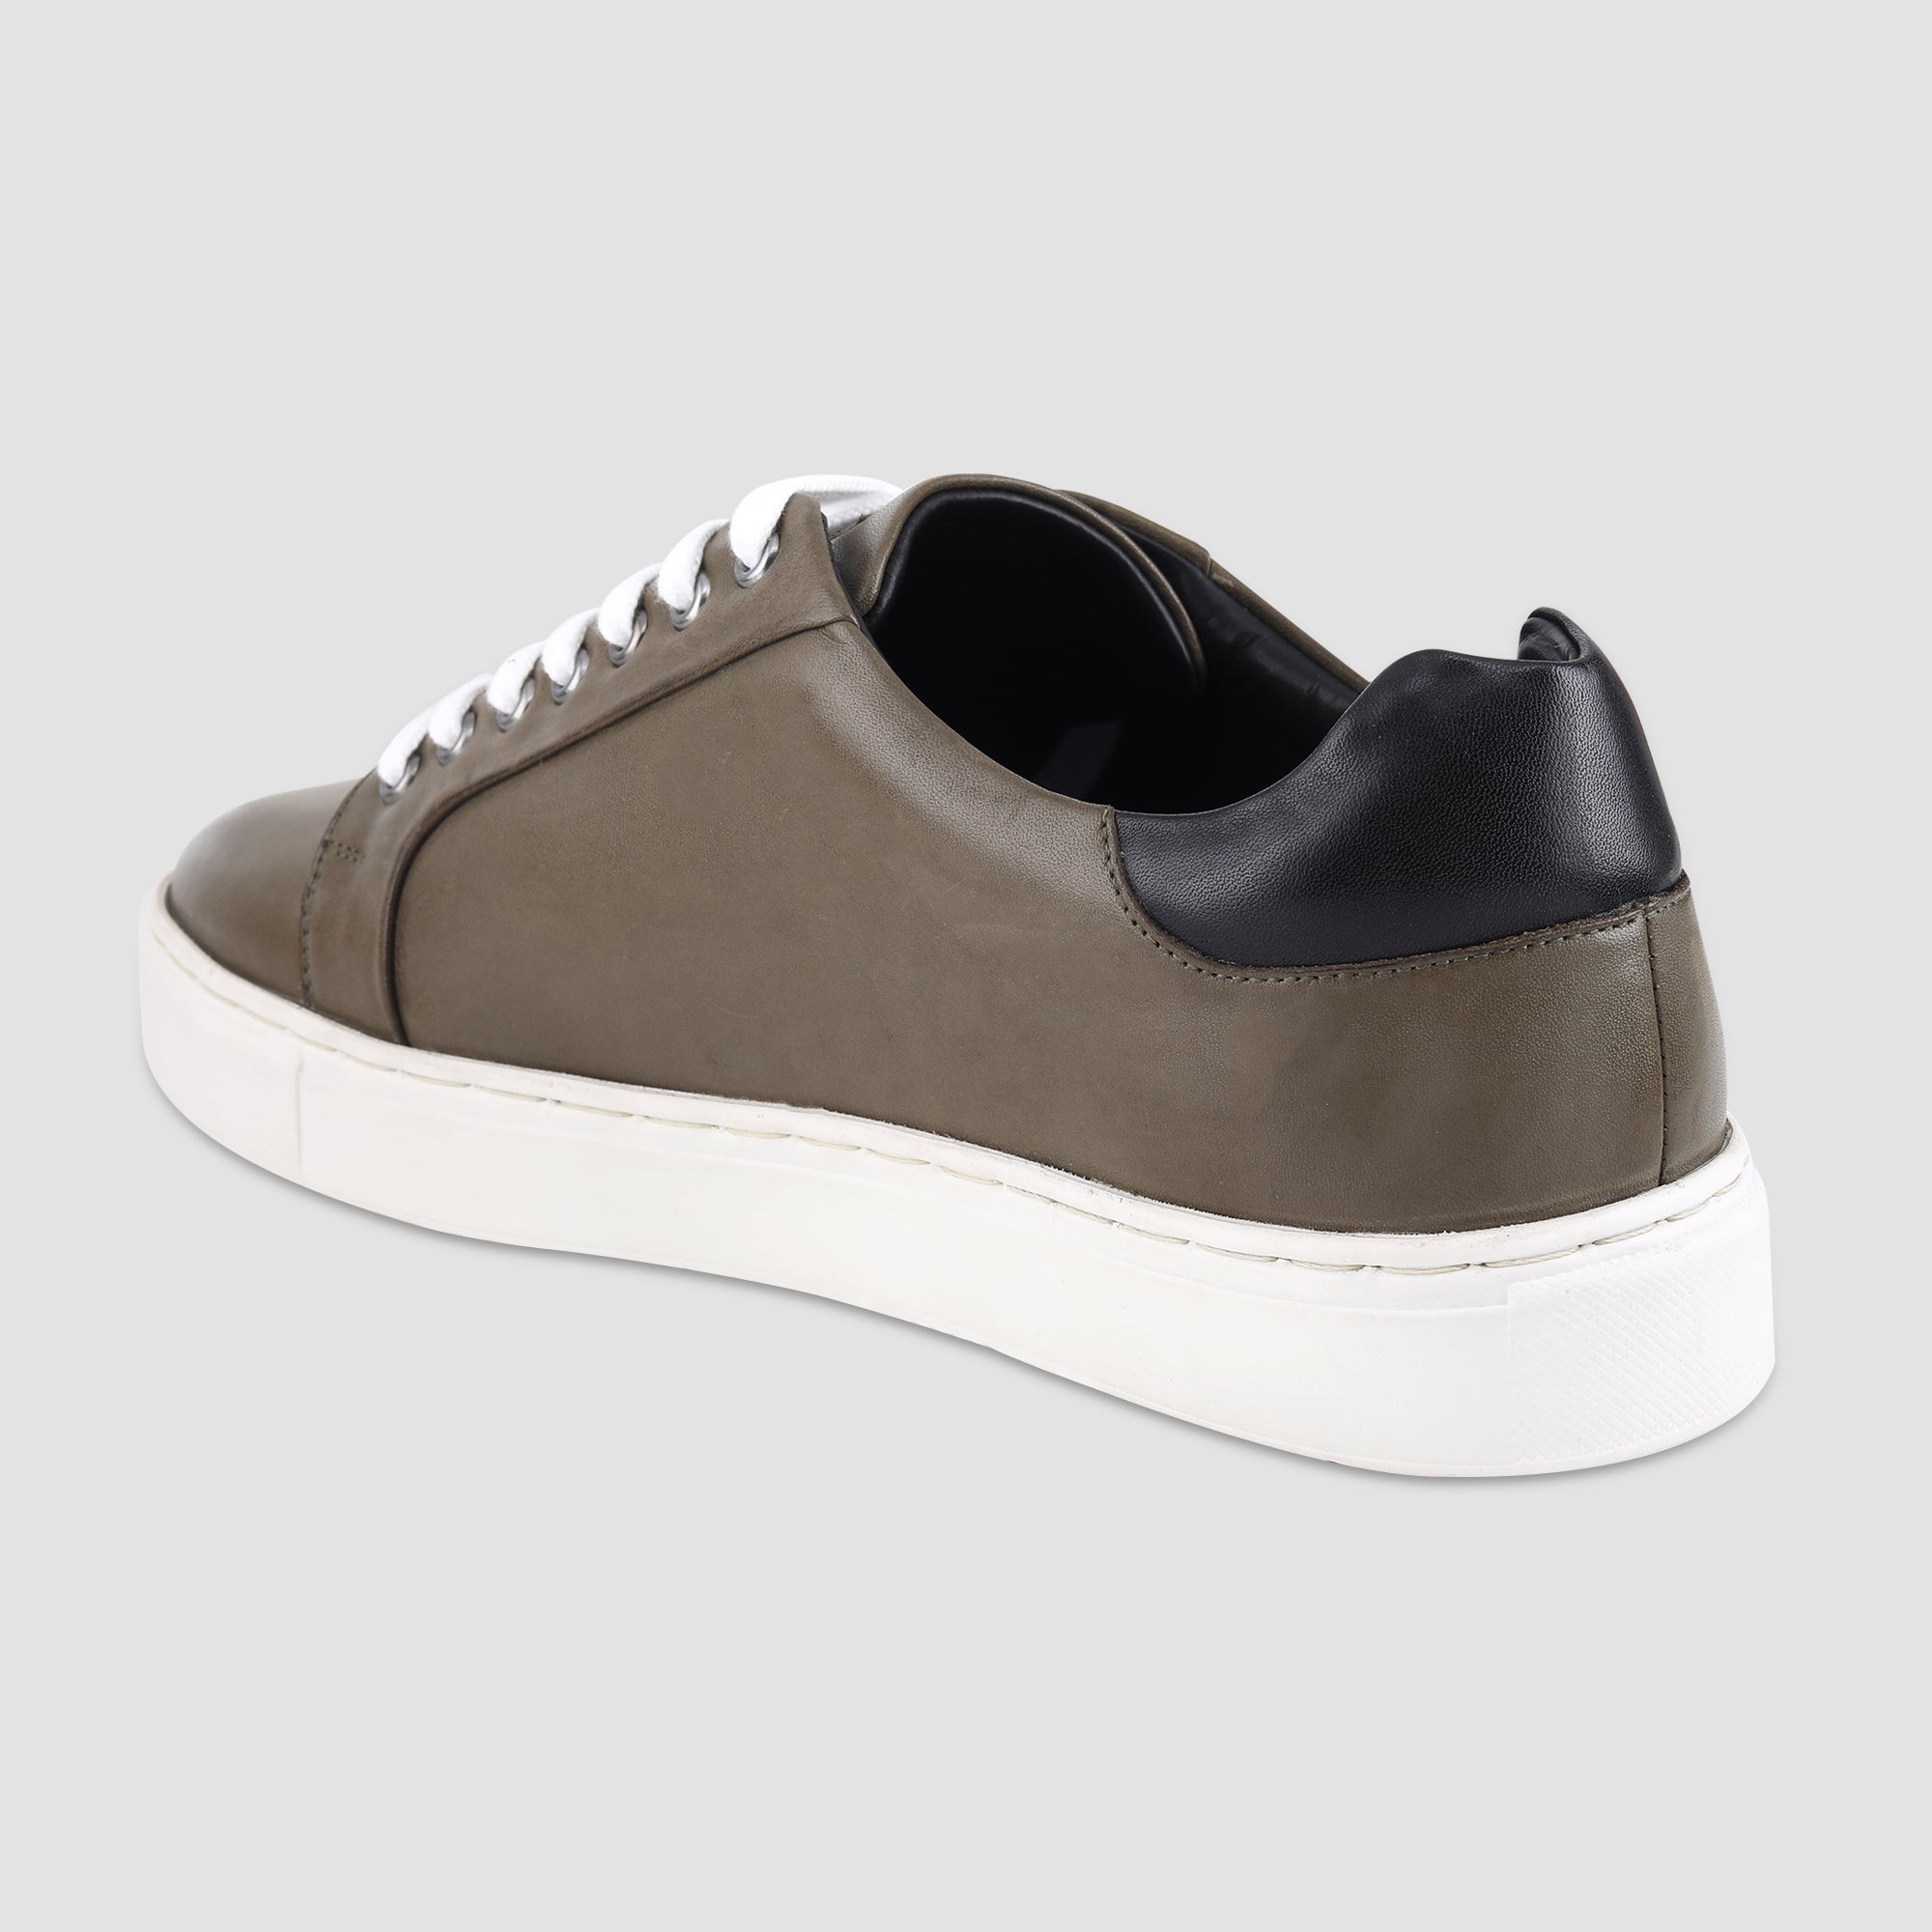 Ezok Olive Leather Sneaker For Men